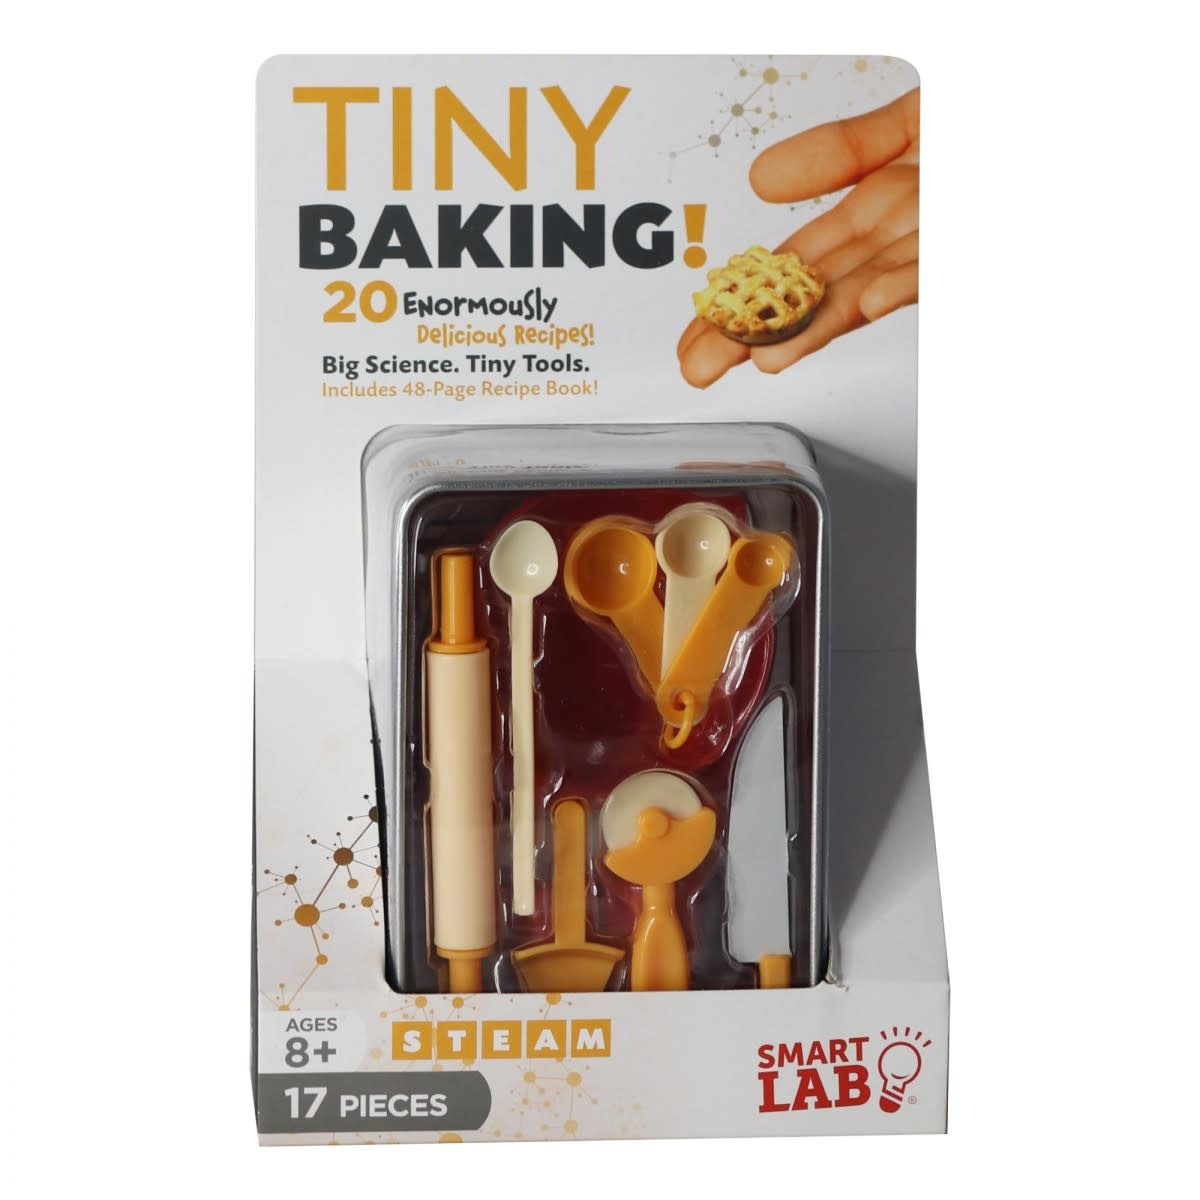 Tiny Baking Tools